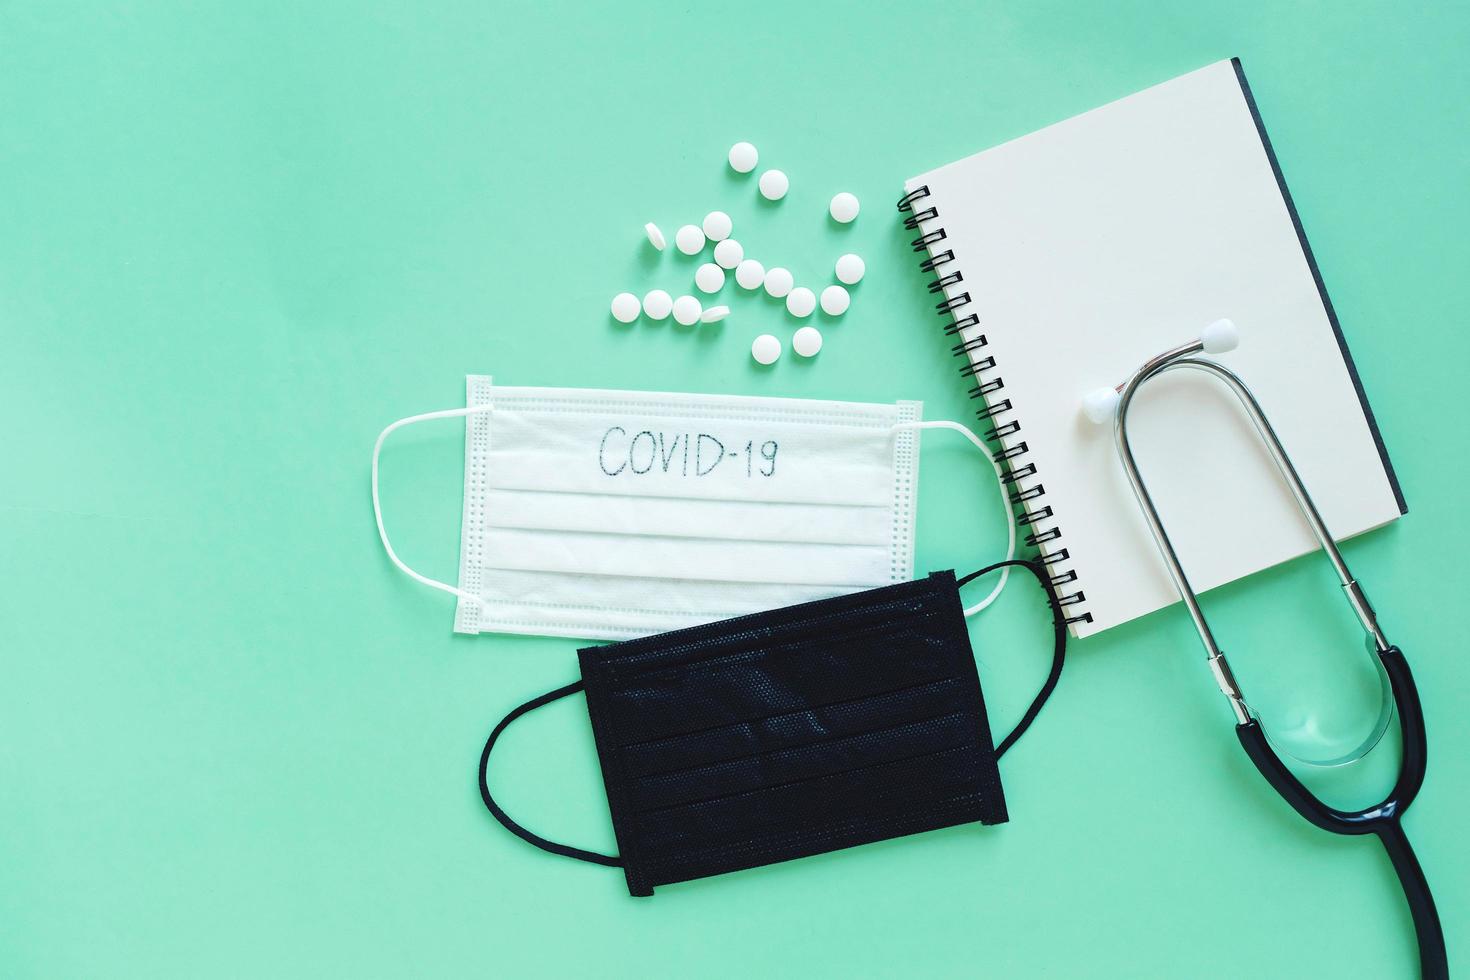 plano de pastillas de medicina, máscara, cuaderno blanco y estetoscopio sobre fondo verde, concepto de atención médica y prevención de la propagación de la pandemia covid-19 y coronavirus foto